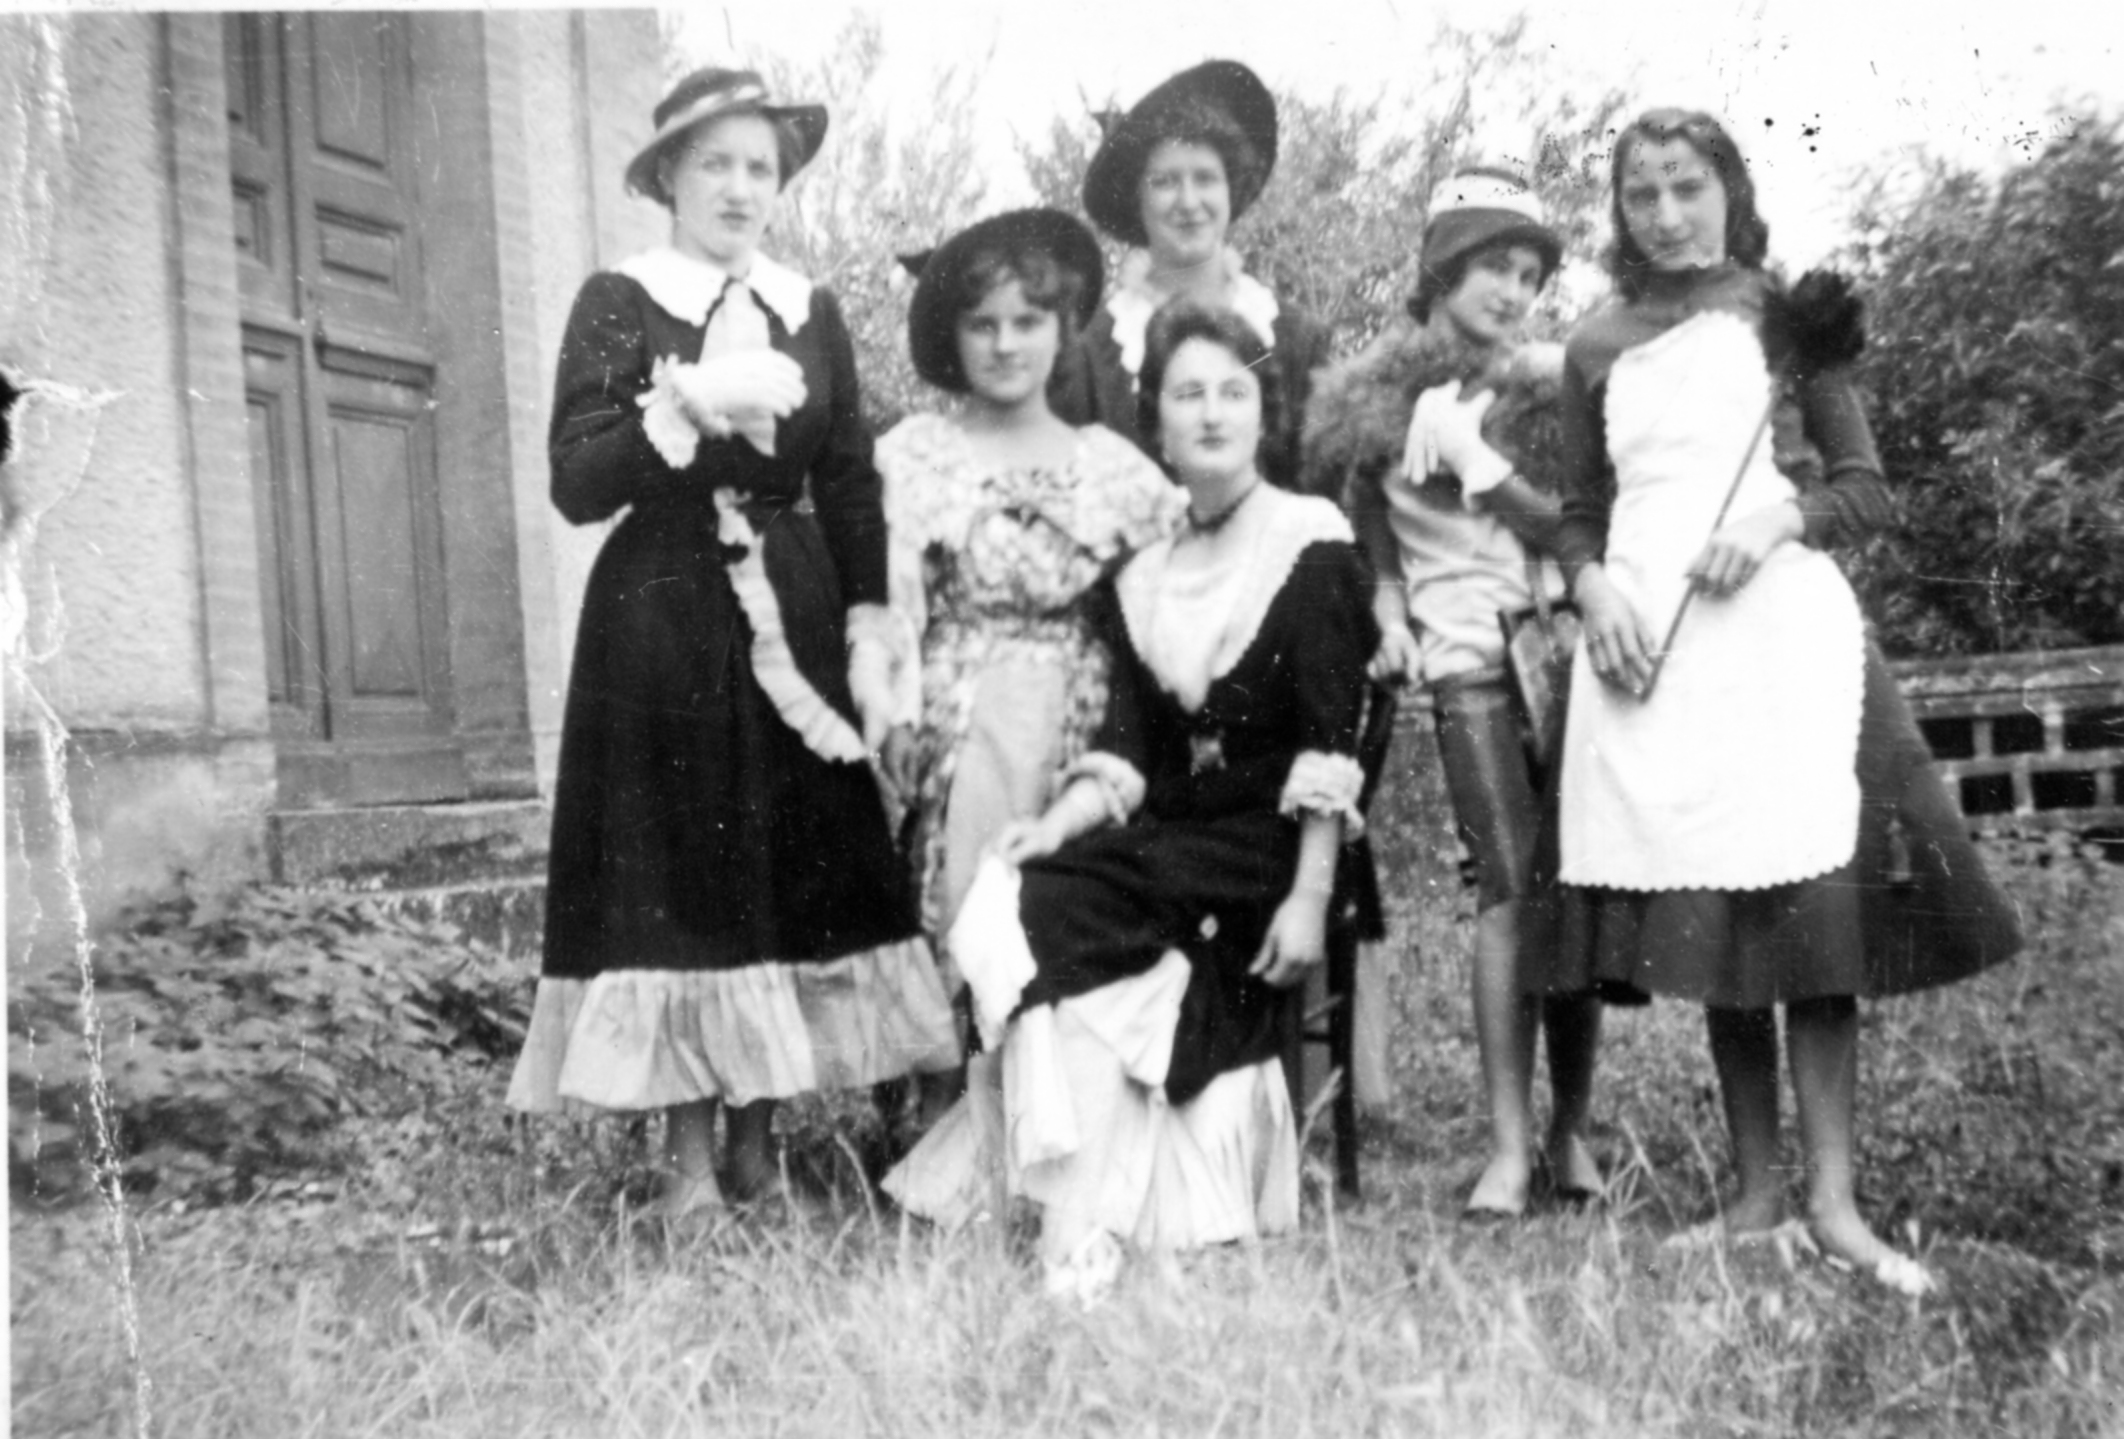 Les demoiselles en 1958.